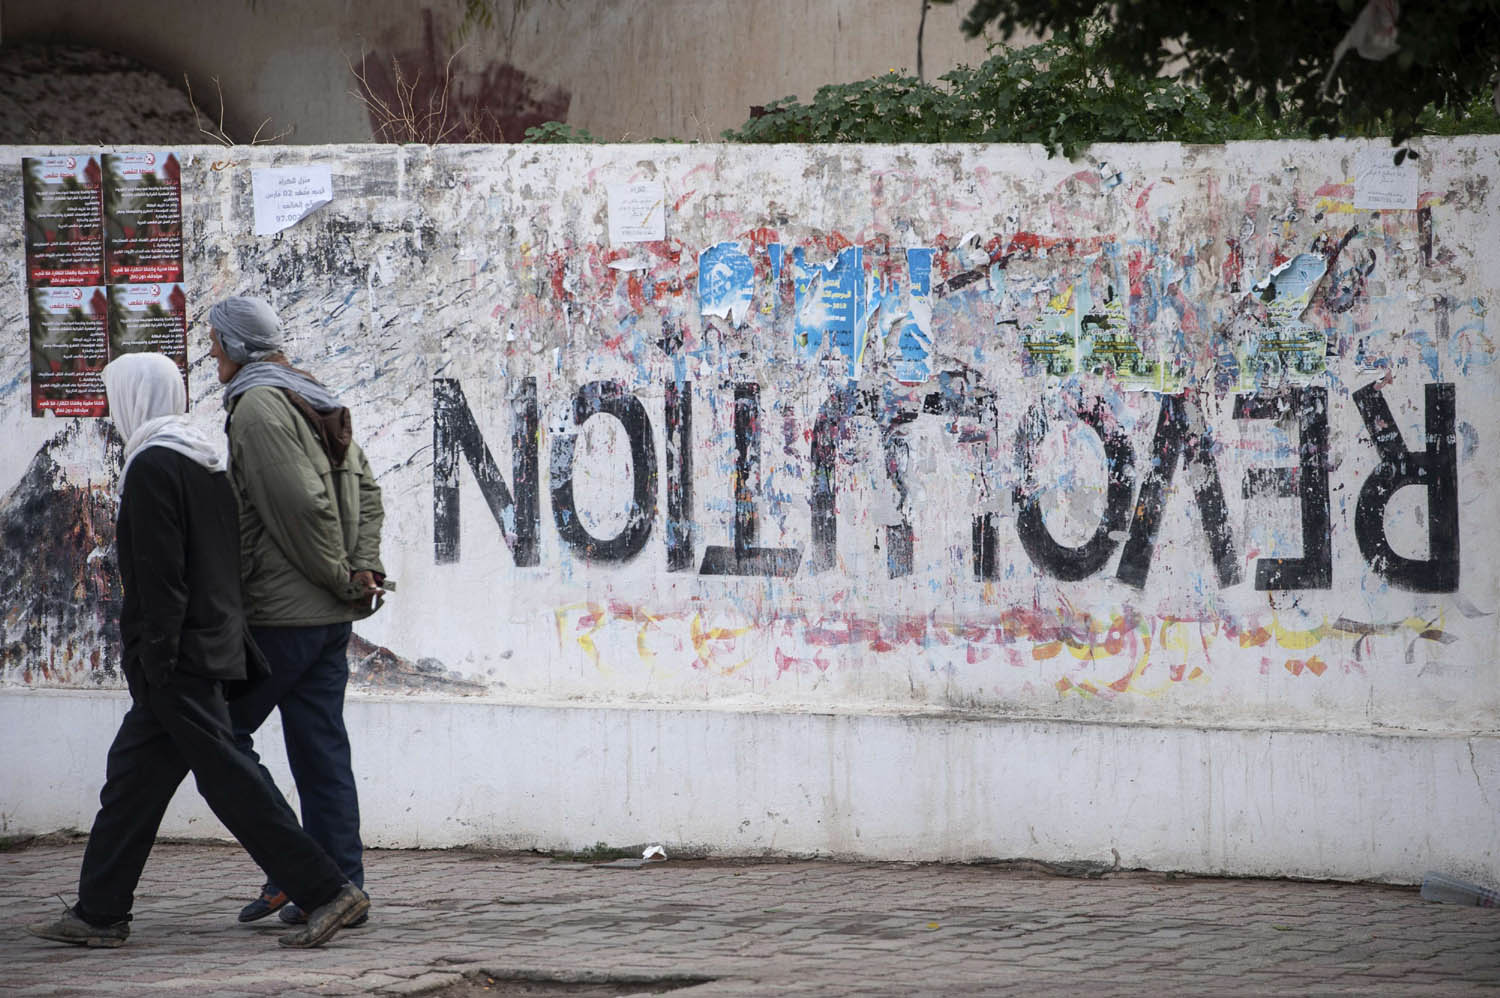 تونسيون يمرون بجانب غرافيتي للثورة مكتوب بالمقلوب